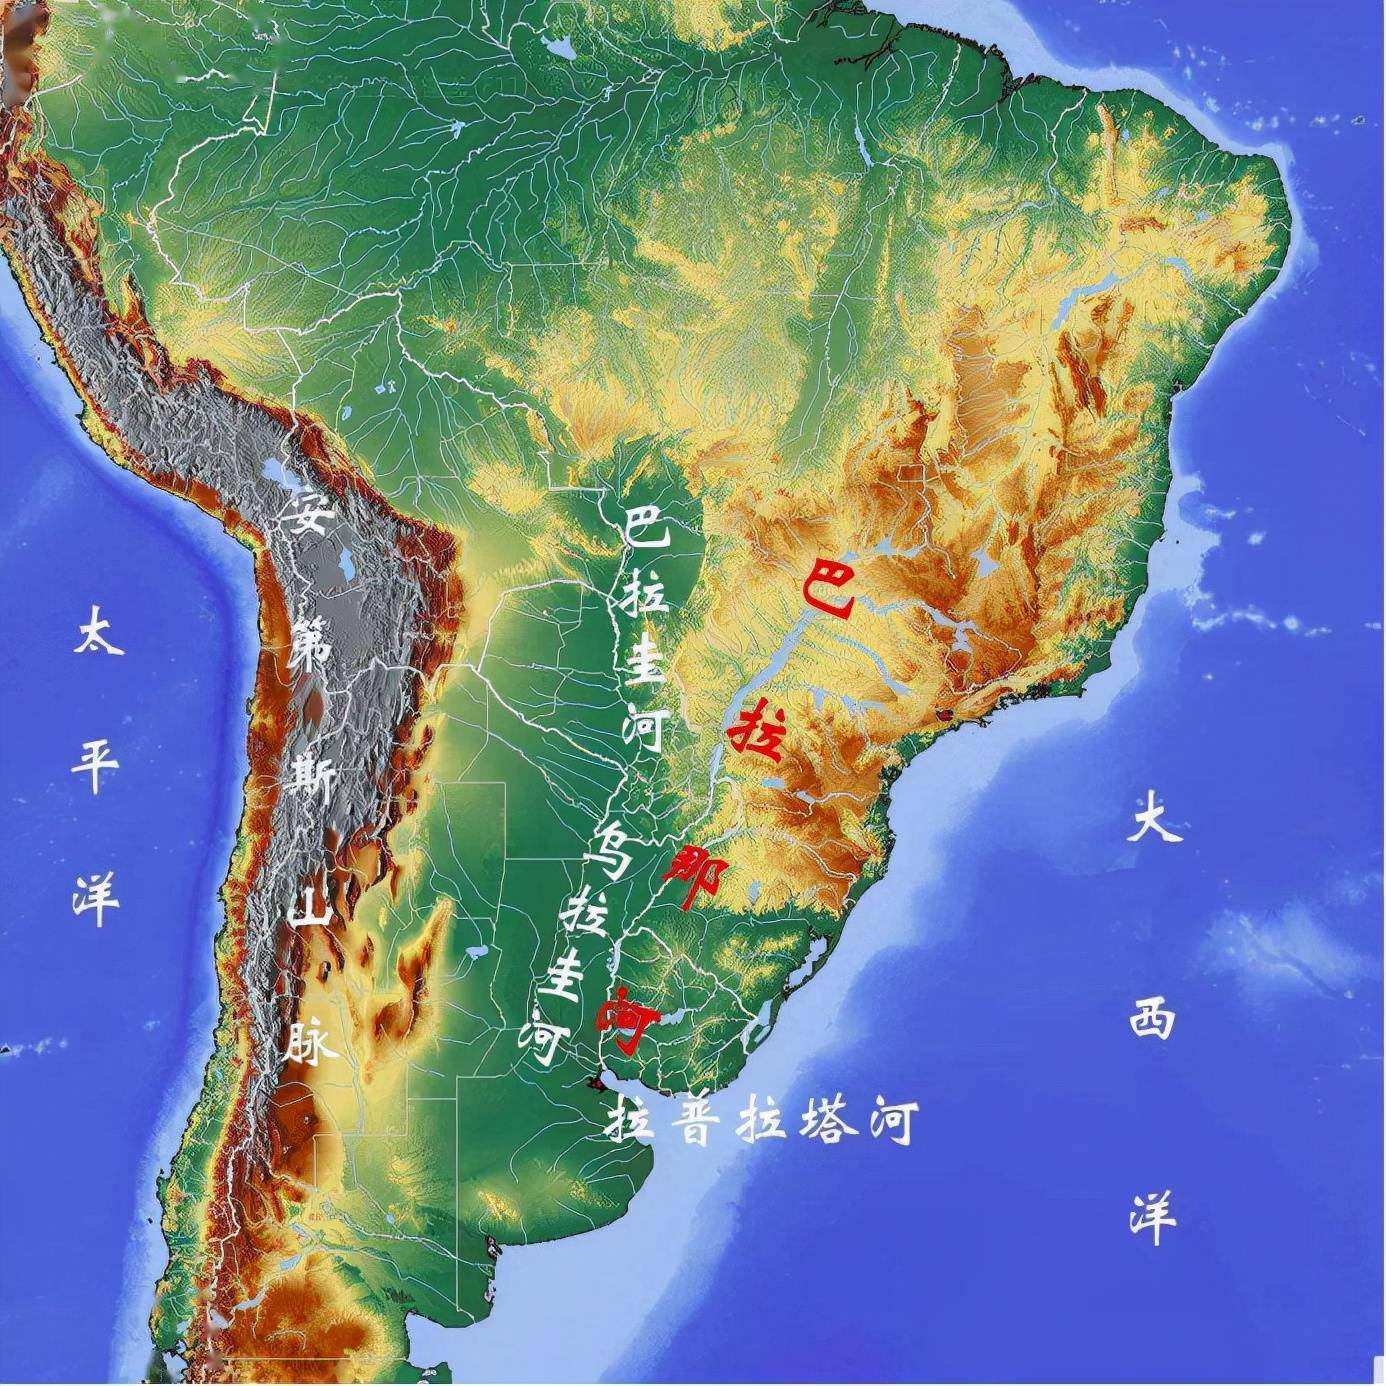 原创巴西和阿根廷都认为自己是拉美老大两国斗争百年如何化解仇怨